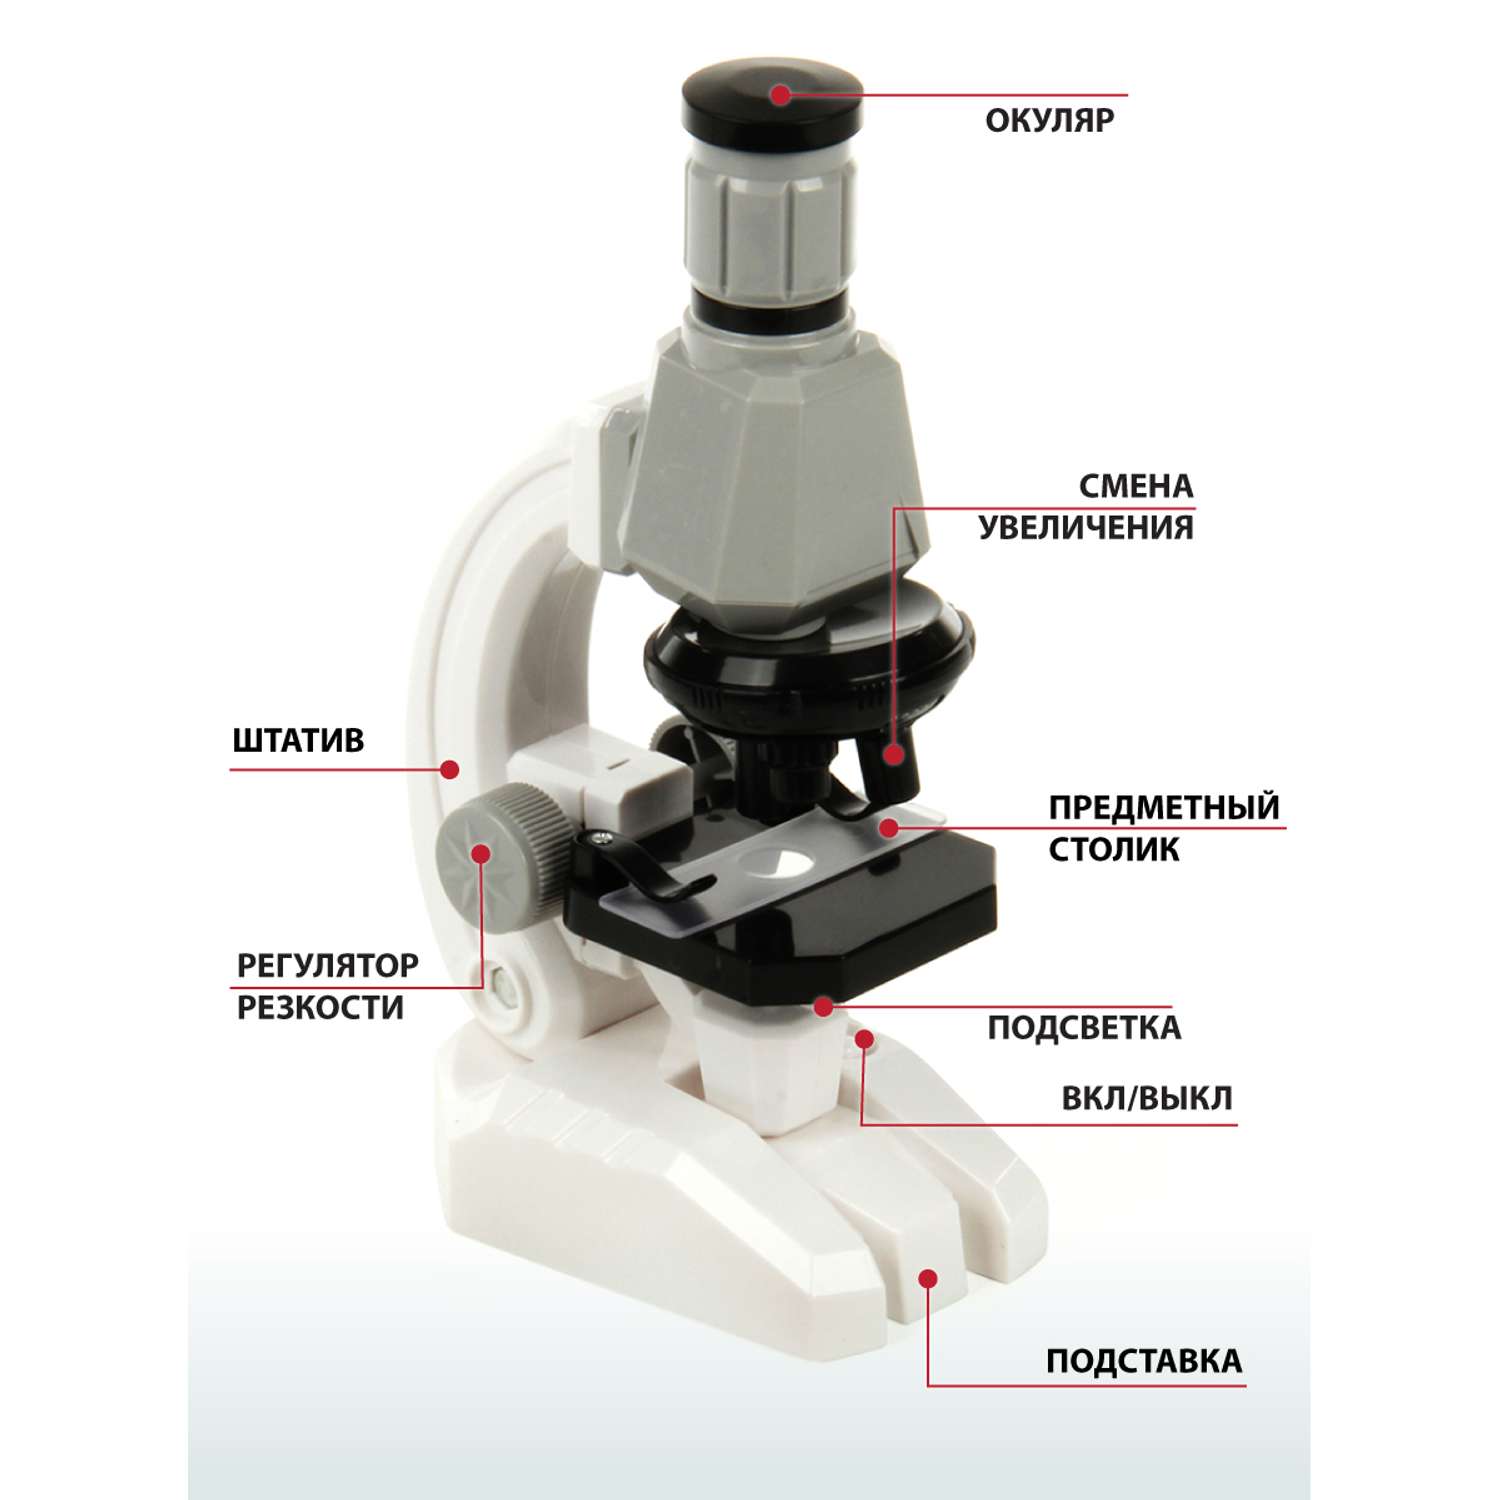 Микроскоп Veld Co с аксессуарами 5 предметов - фото 4